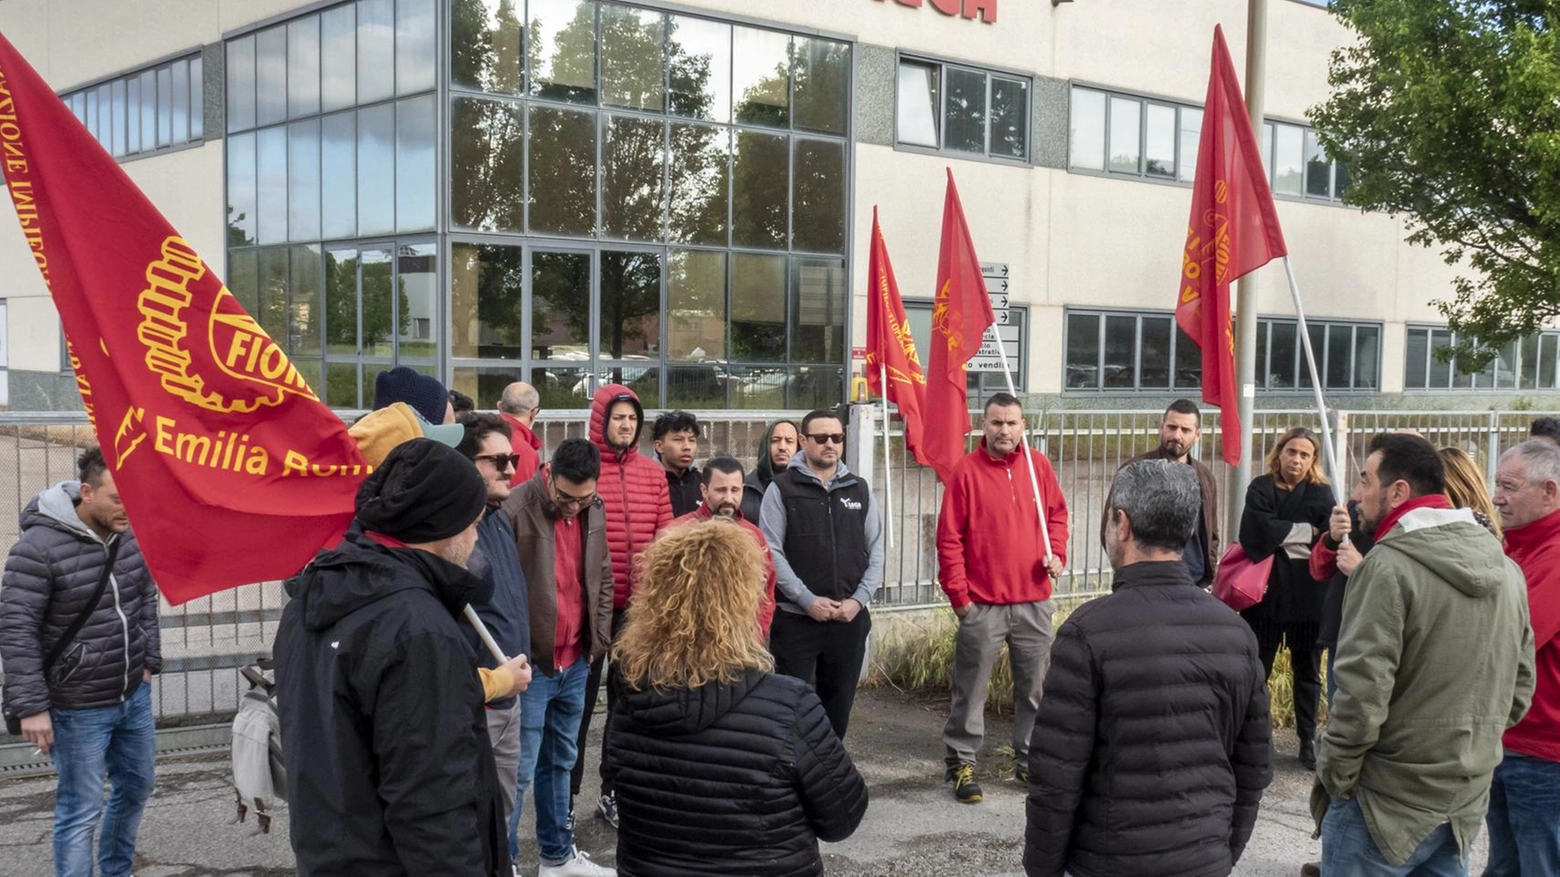 I 25 lavoratori ieri si sono trovati davanti alla sede dell’azienda in forte crisi. Il legale della ditta: "I fornitori non consegnano più e gli ordini sono bloccati".